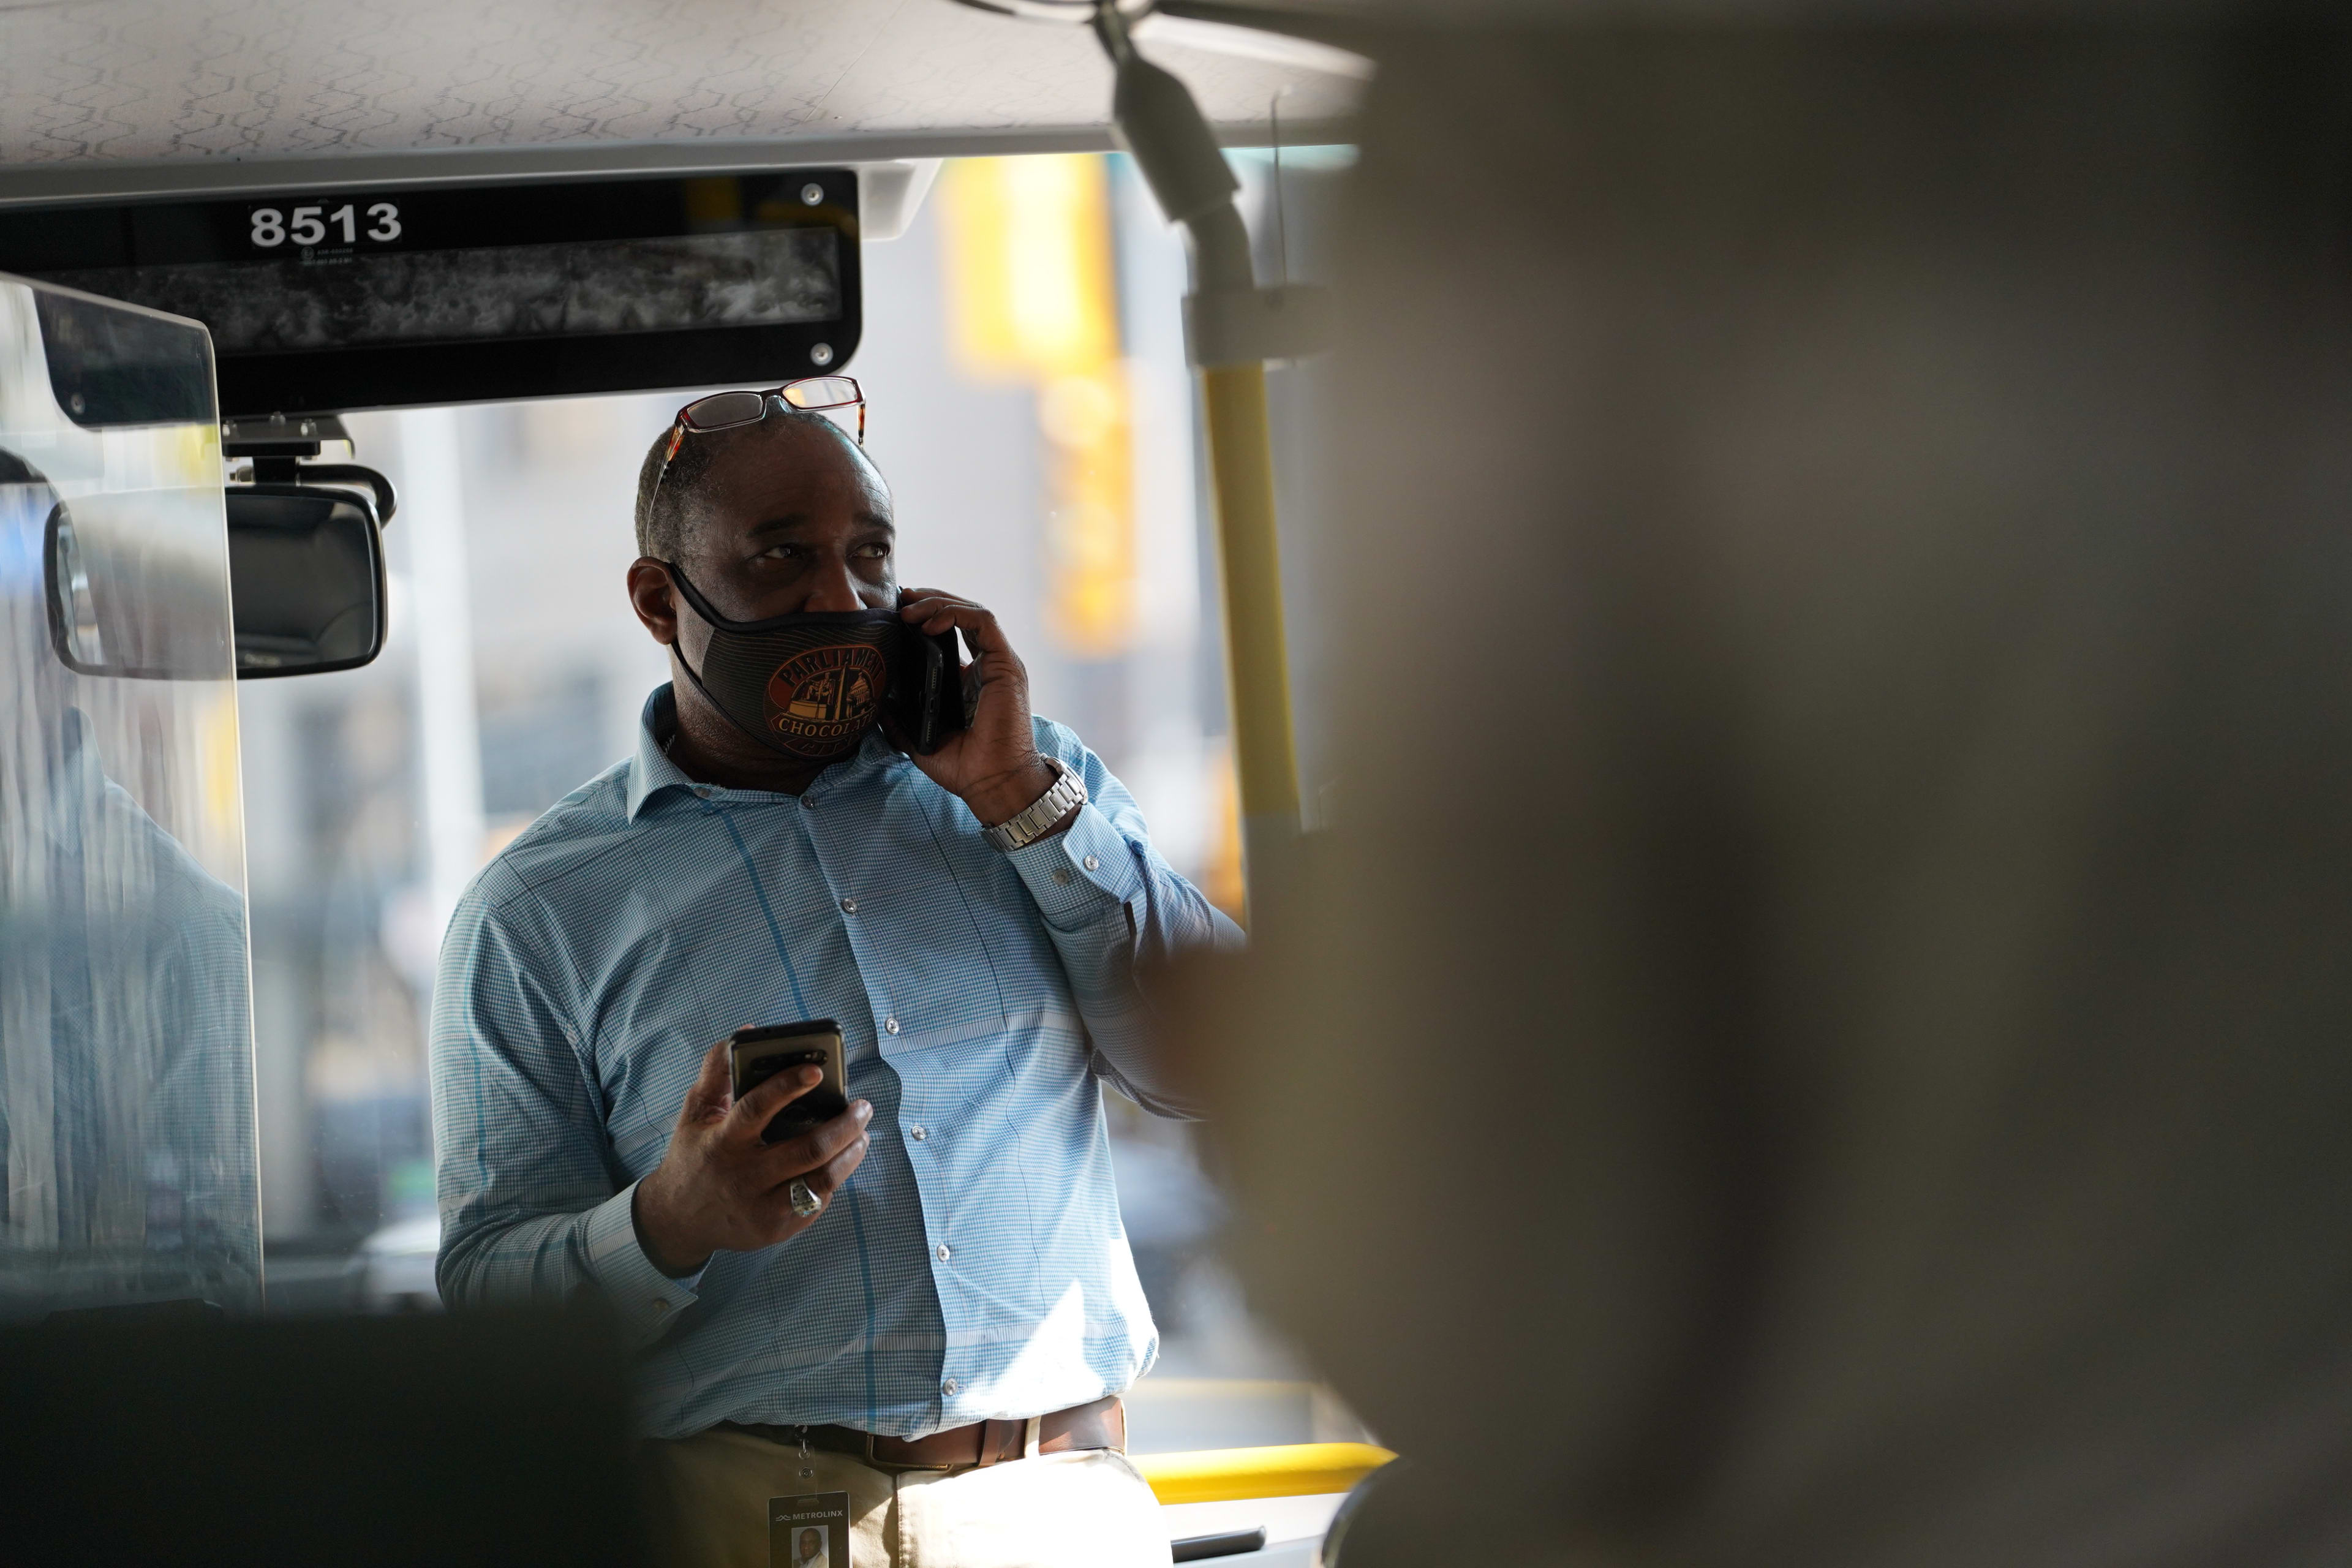 A man uses a phone on a GO bus.